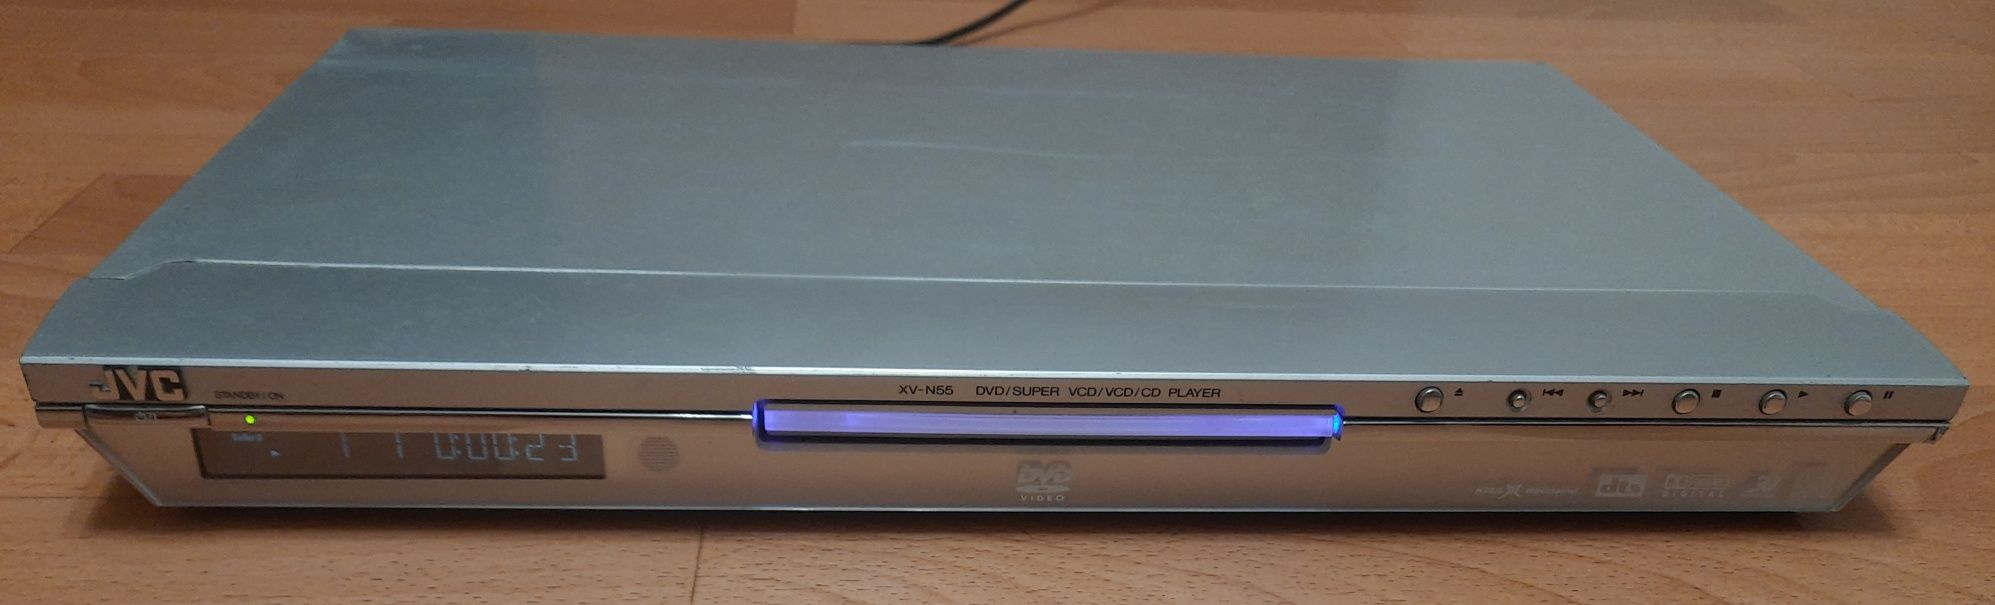 DVD-проигрыватель JVC XV-N55, б/у. без пульта.